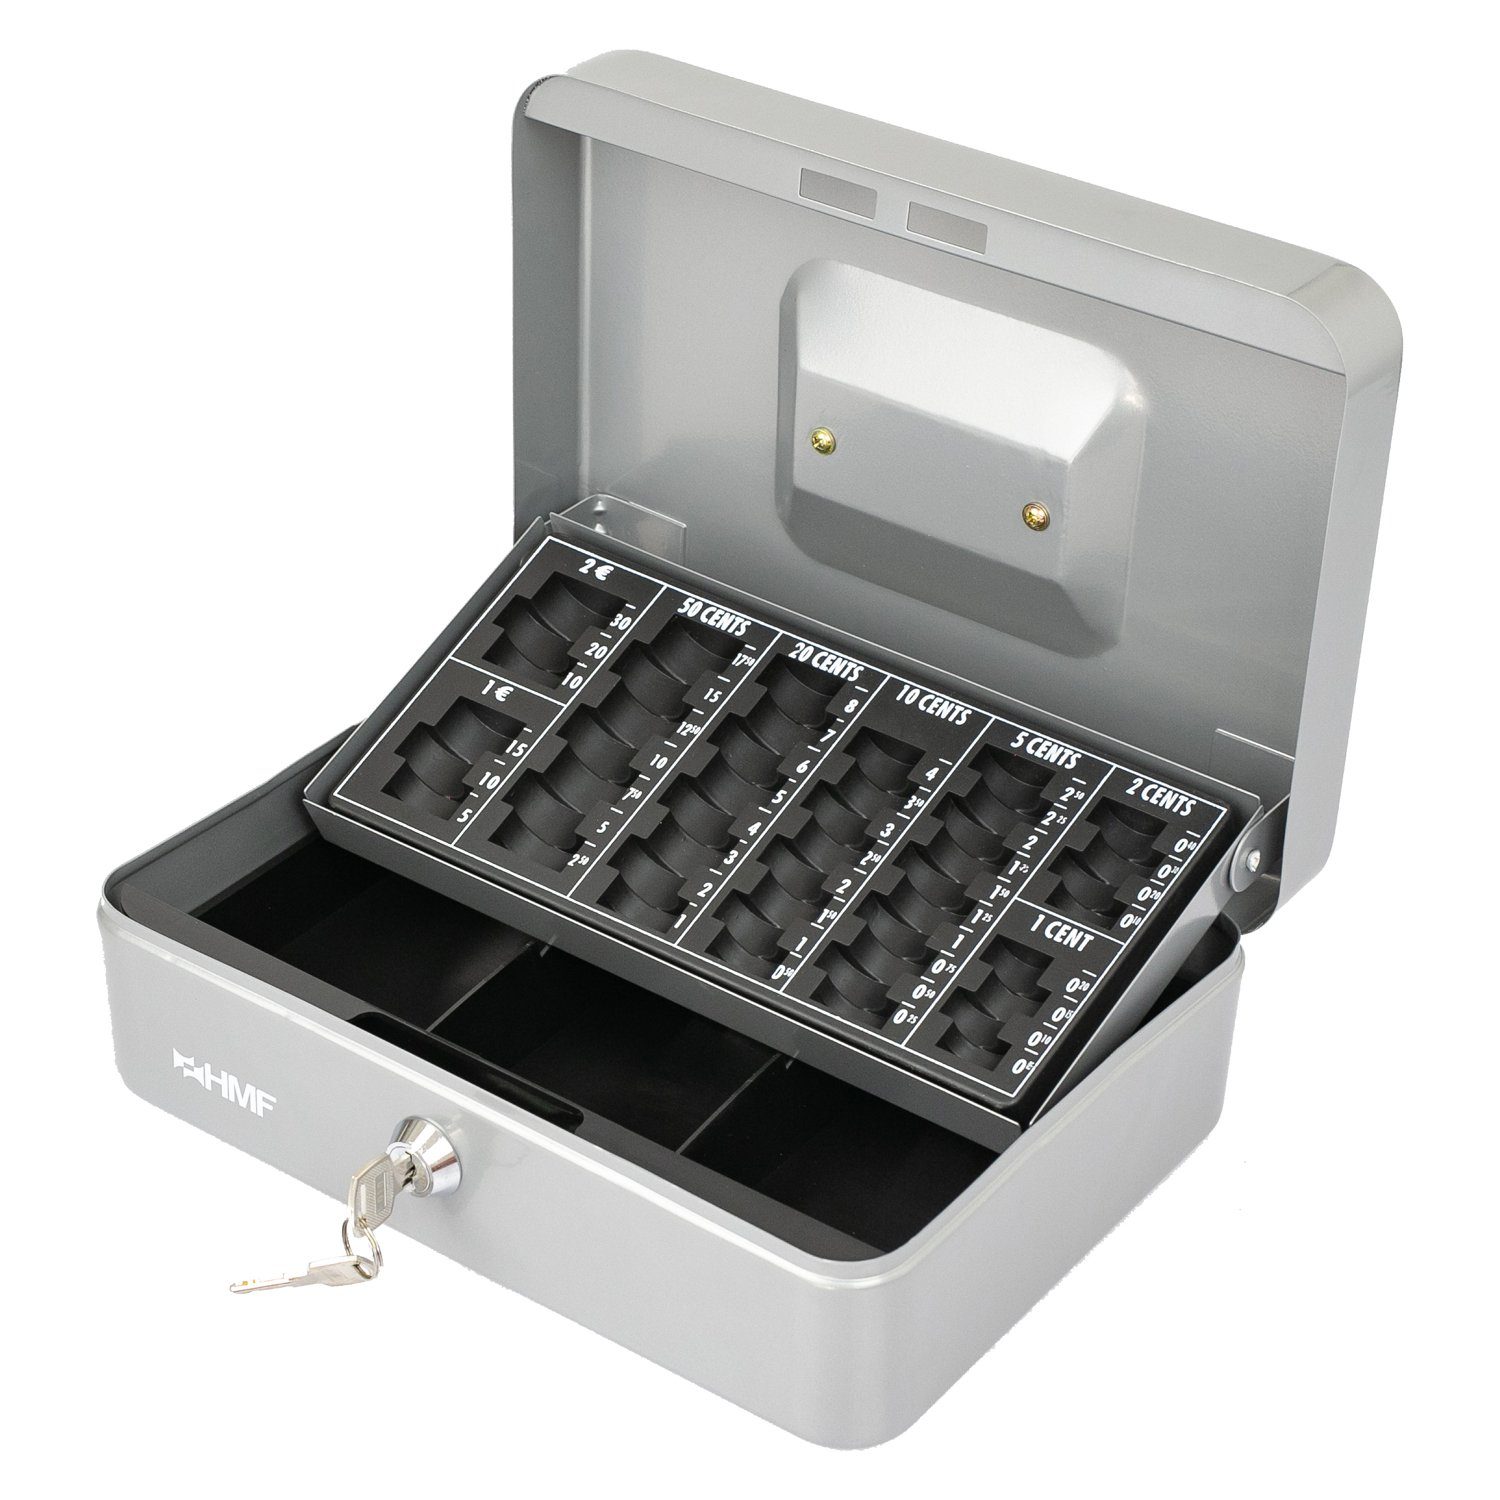 cm Schlüssel, mit Scheinfach, Bargeldkasse Geldbox HMF mit 25x18x9 robuste Münzzählbrett abschließbare Geldkassette silber und